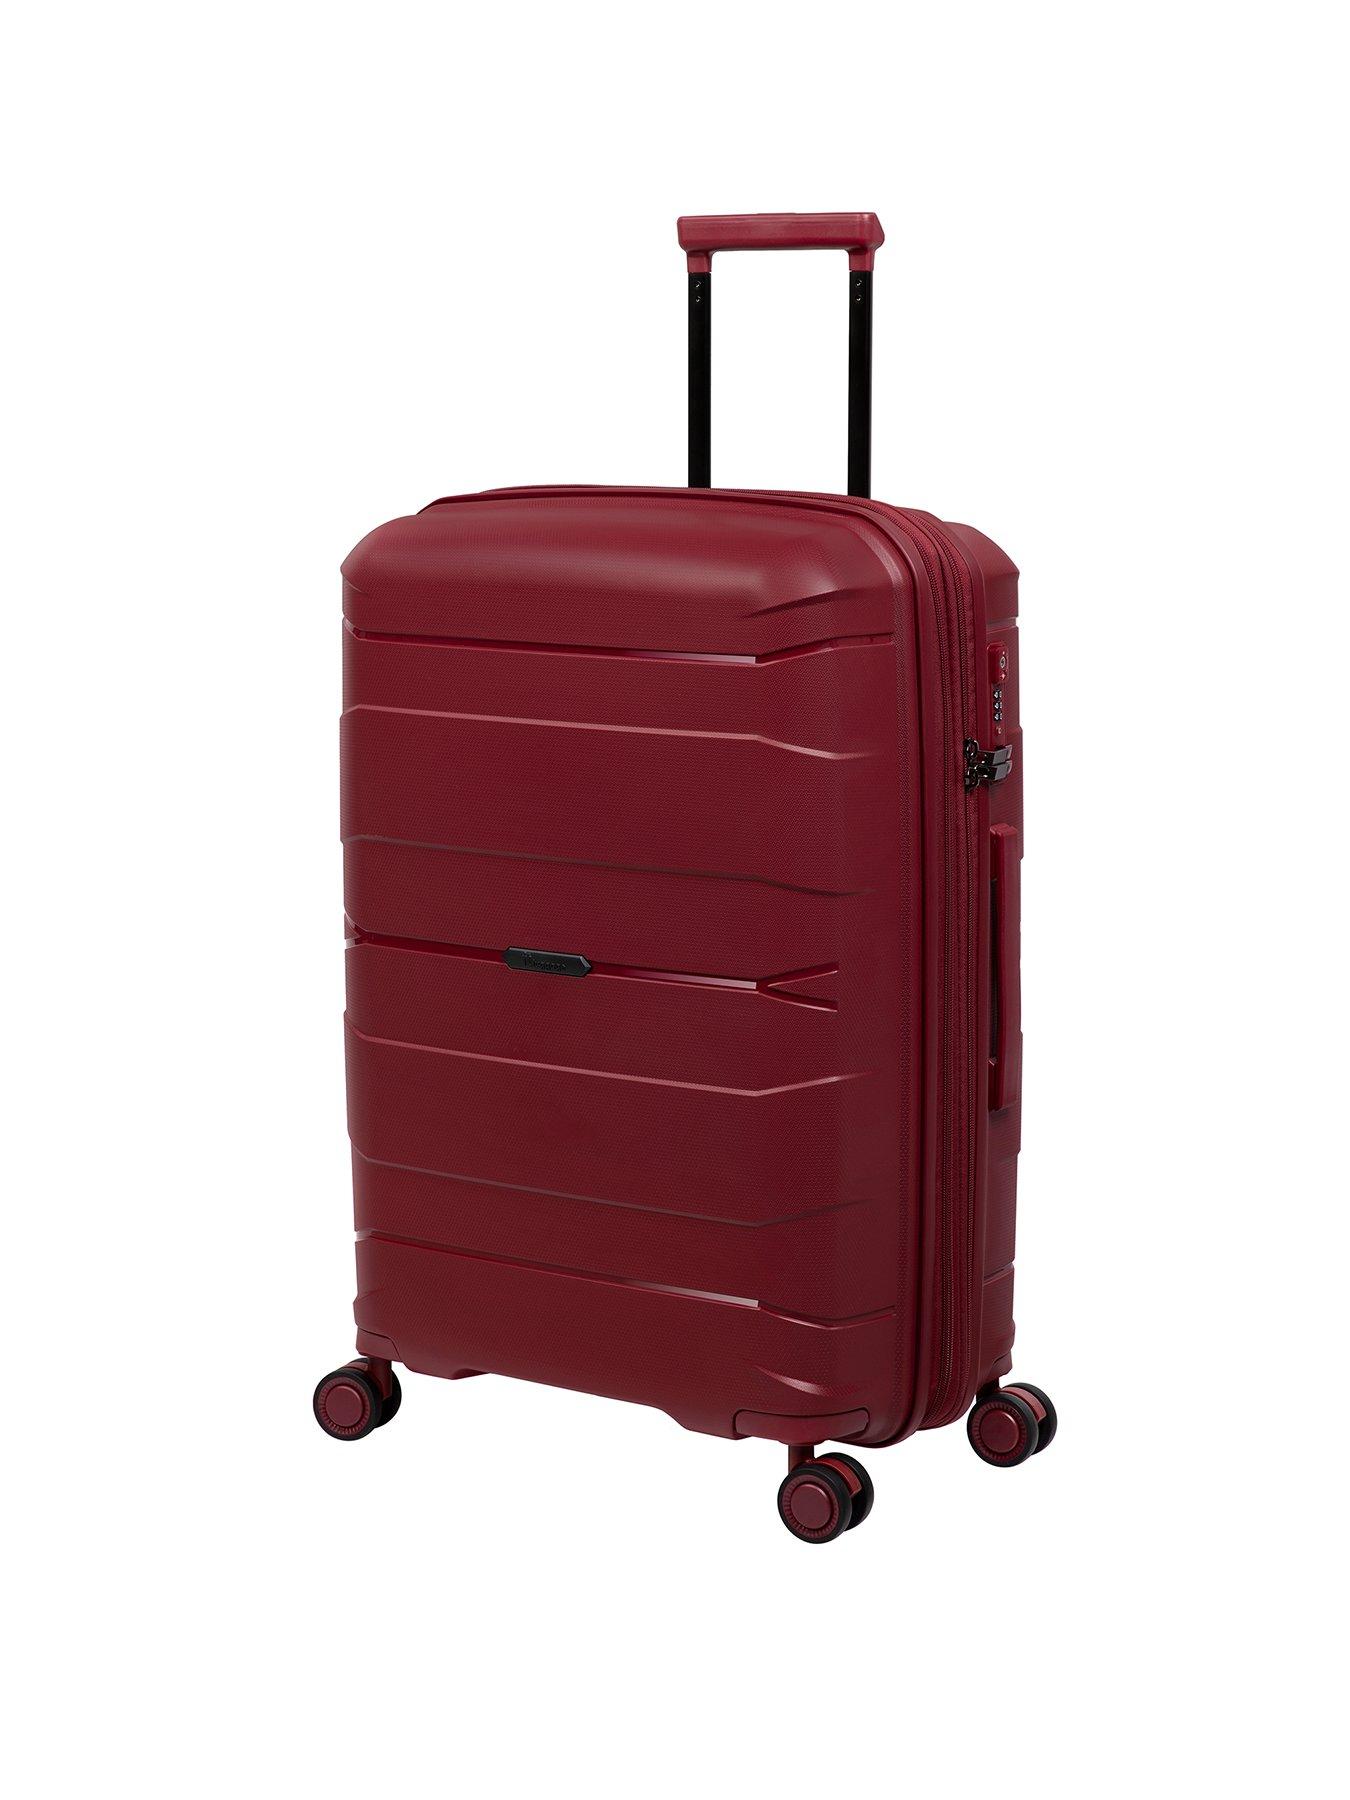 it Luggage Momentous German Red Medium Expandable Hardshell 8 Wheel ...